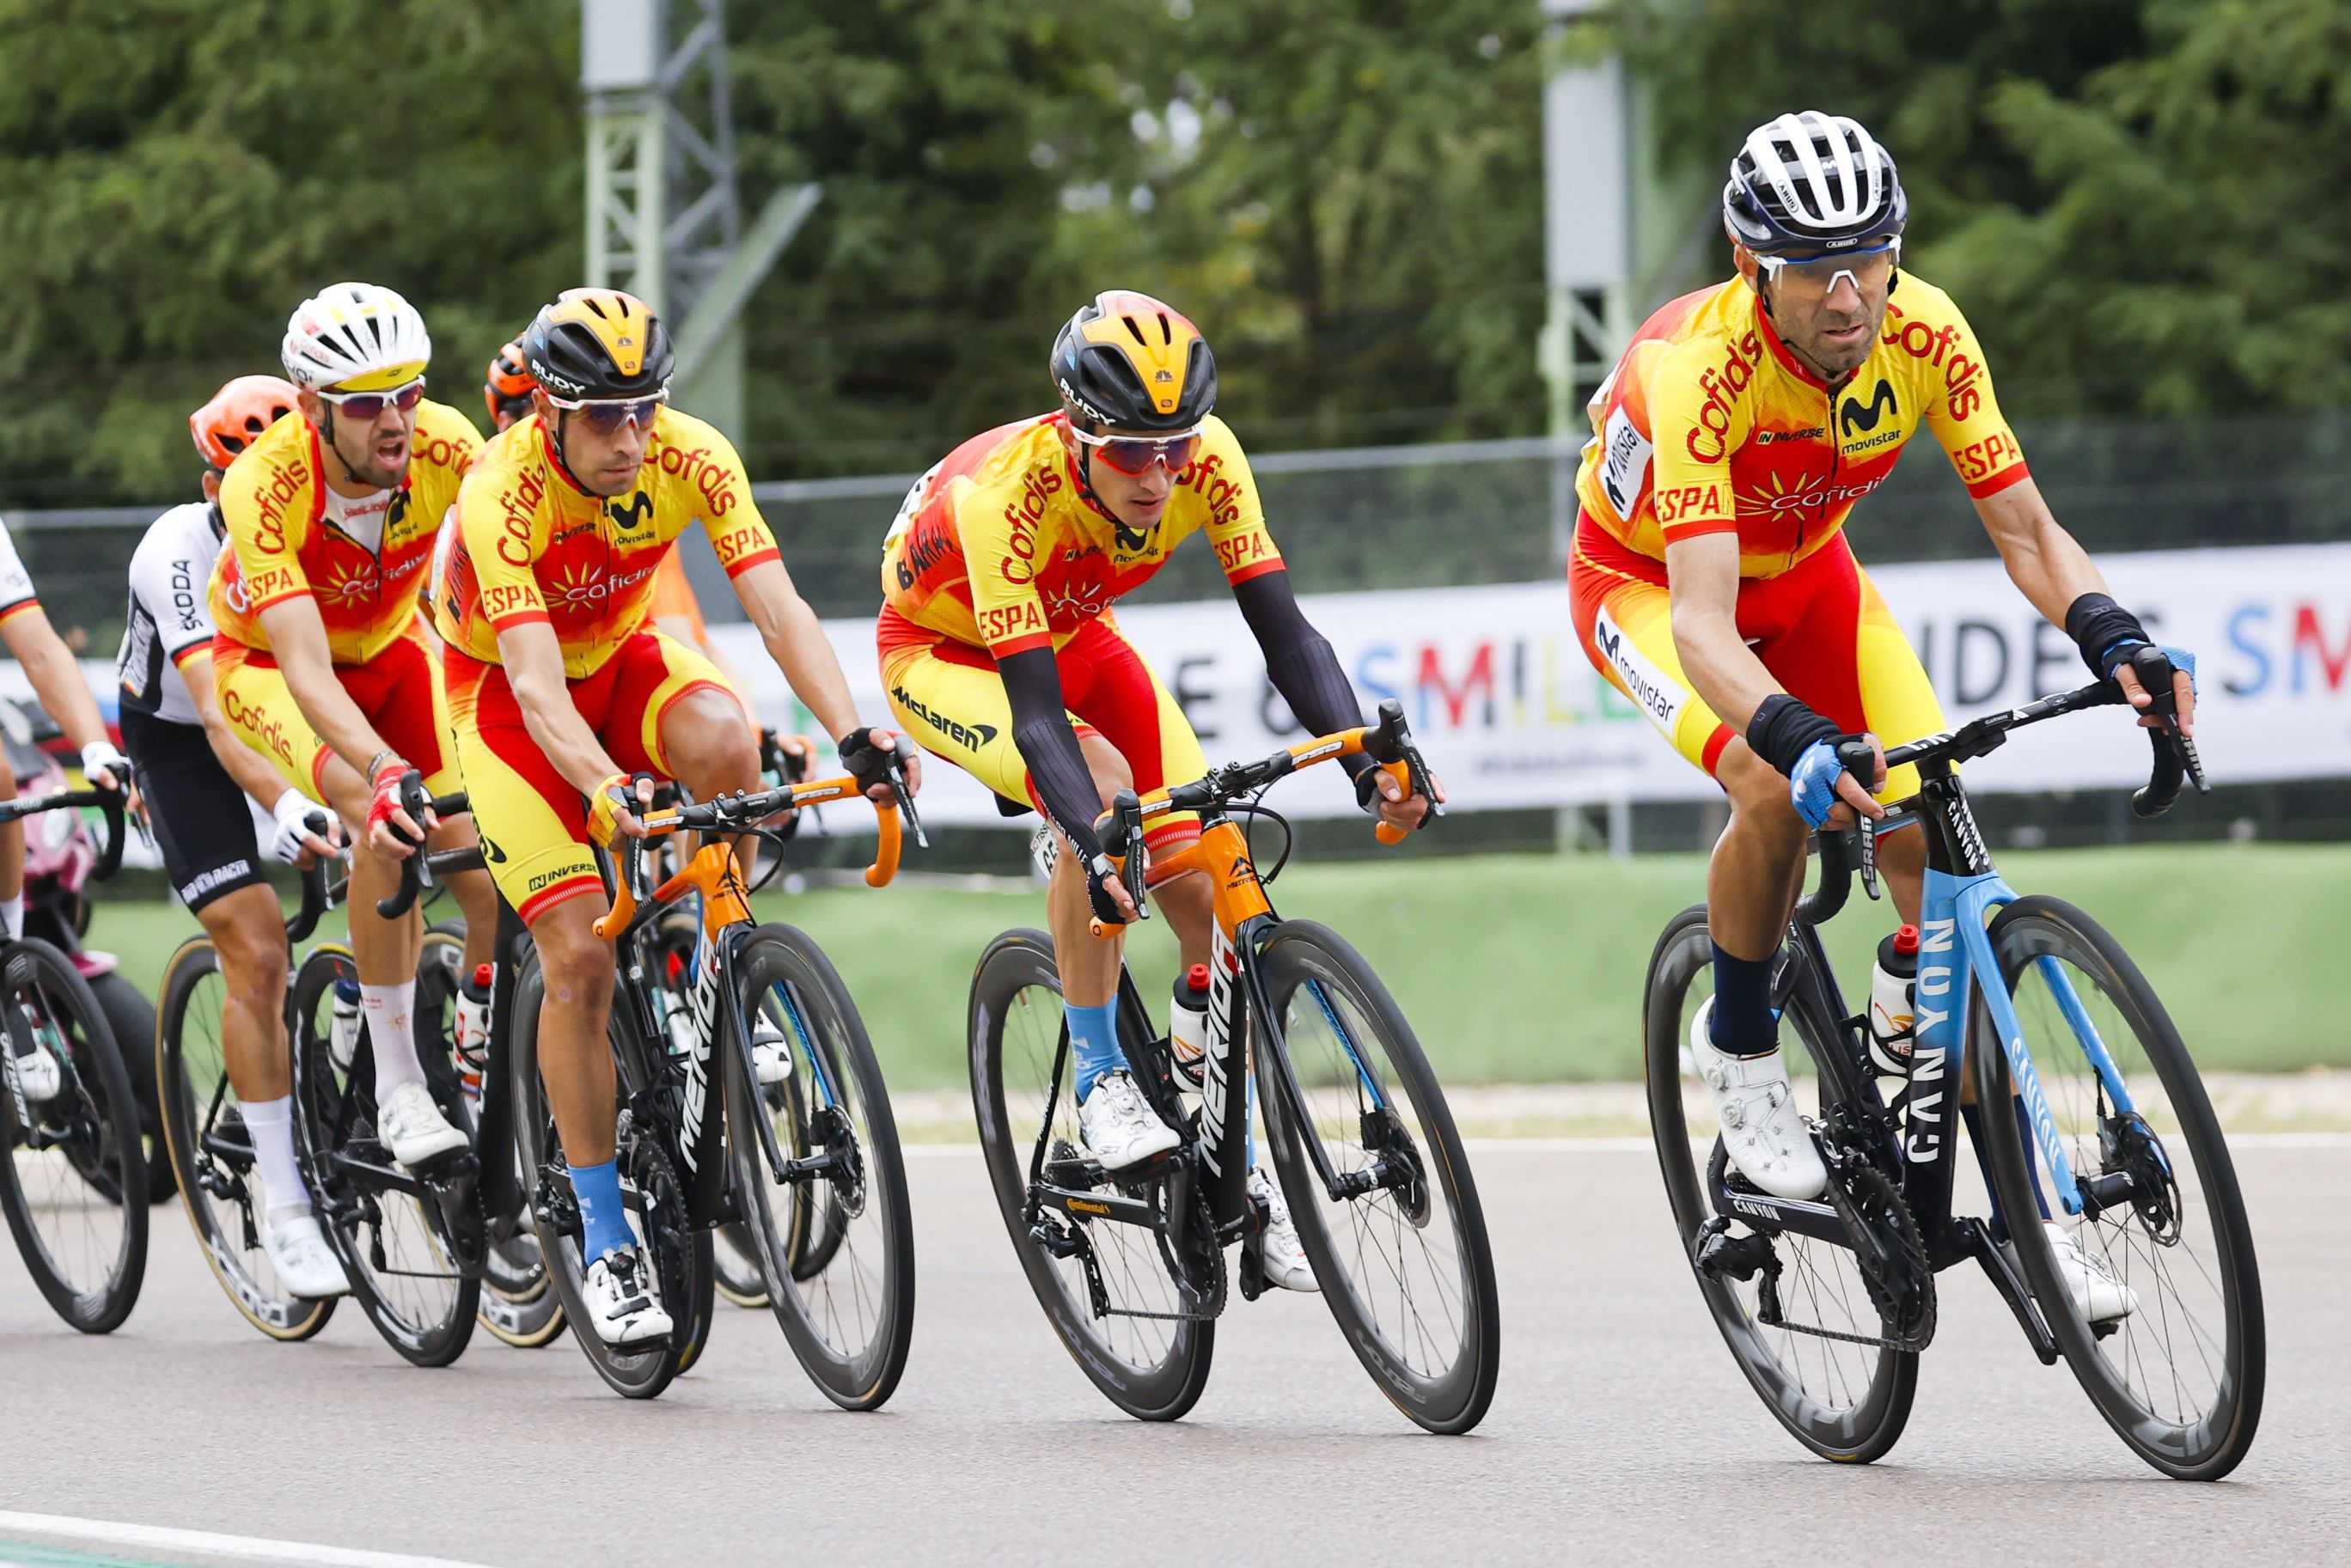 Imagen de archivo de la selección española de ciclismo. Herrada, el último de los ciclista españoles en imagen.